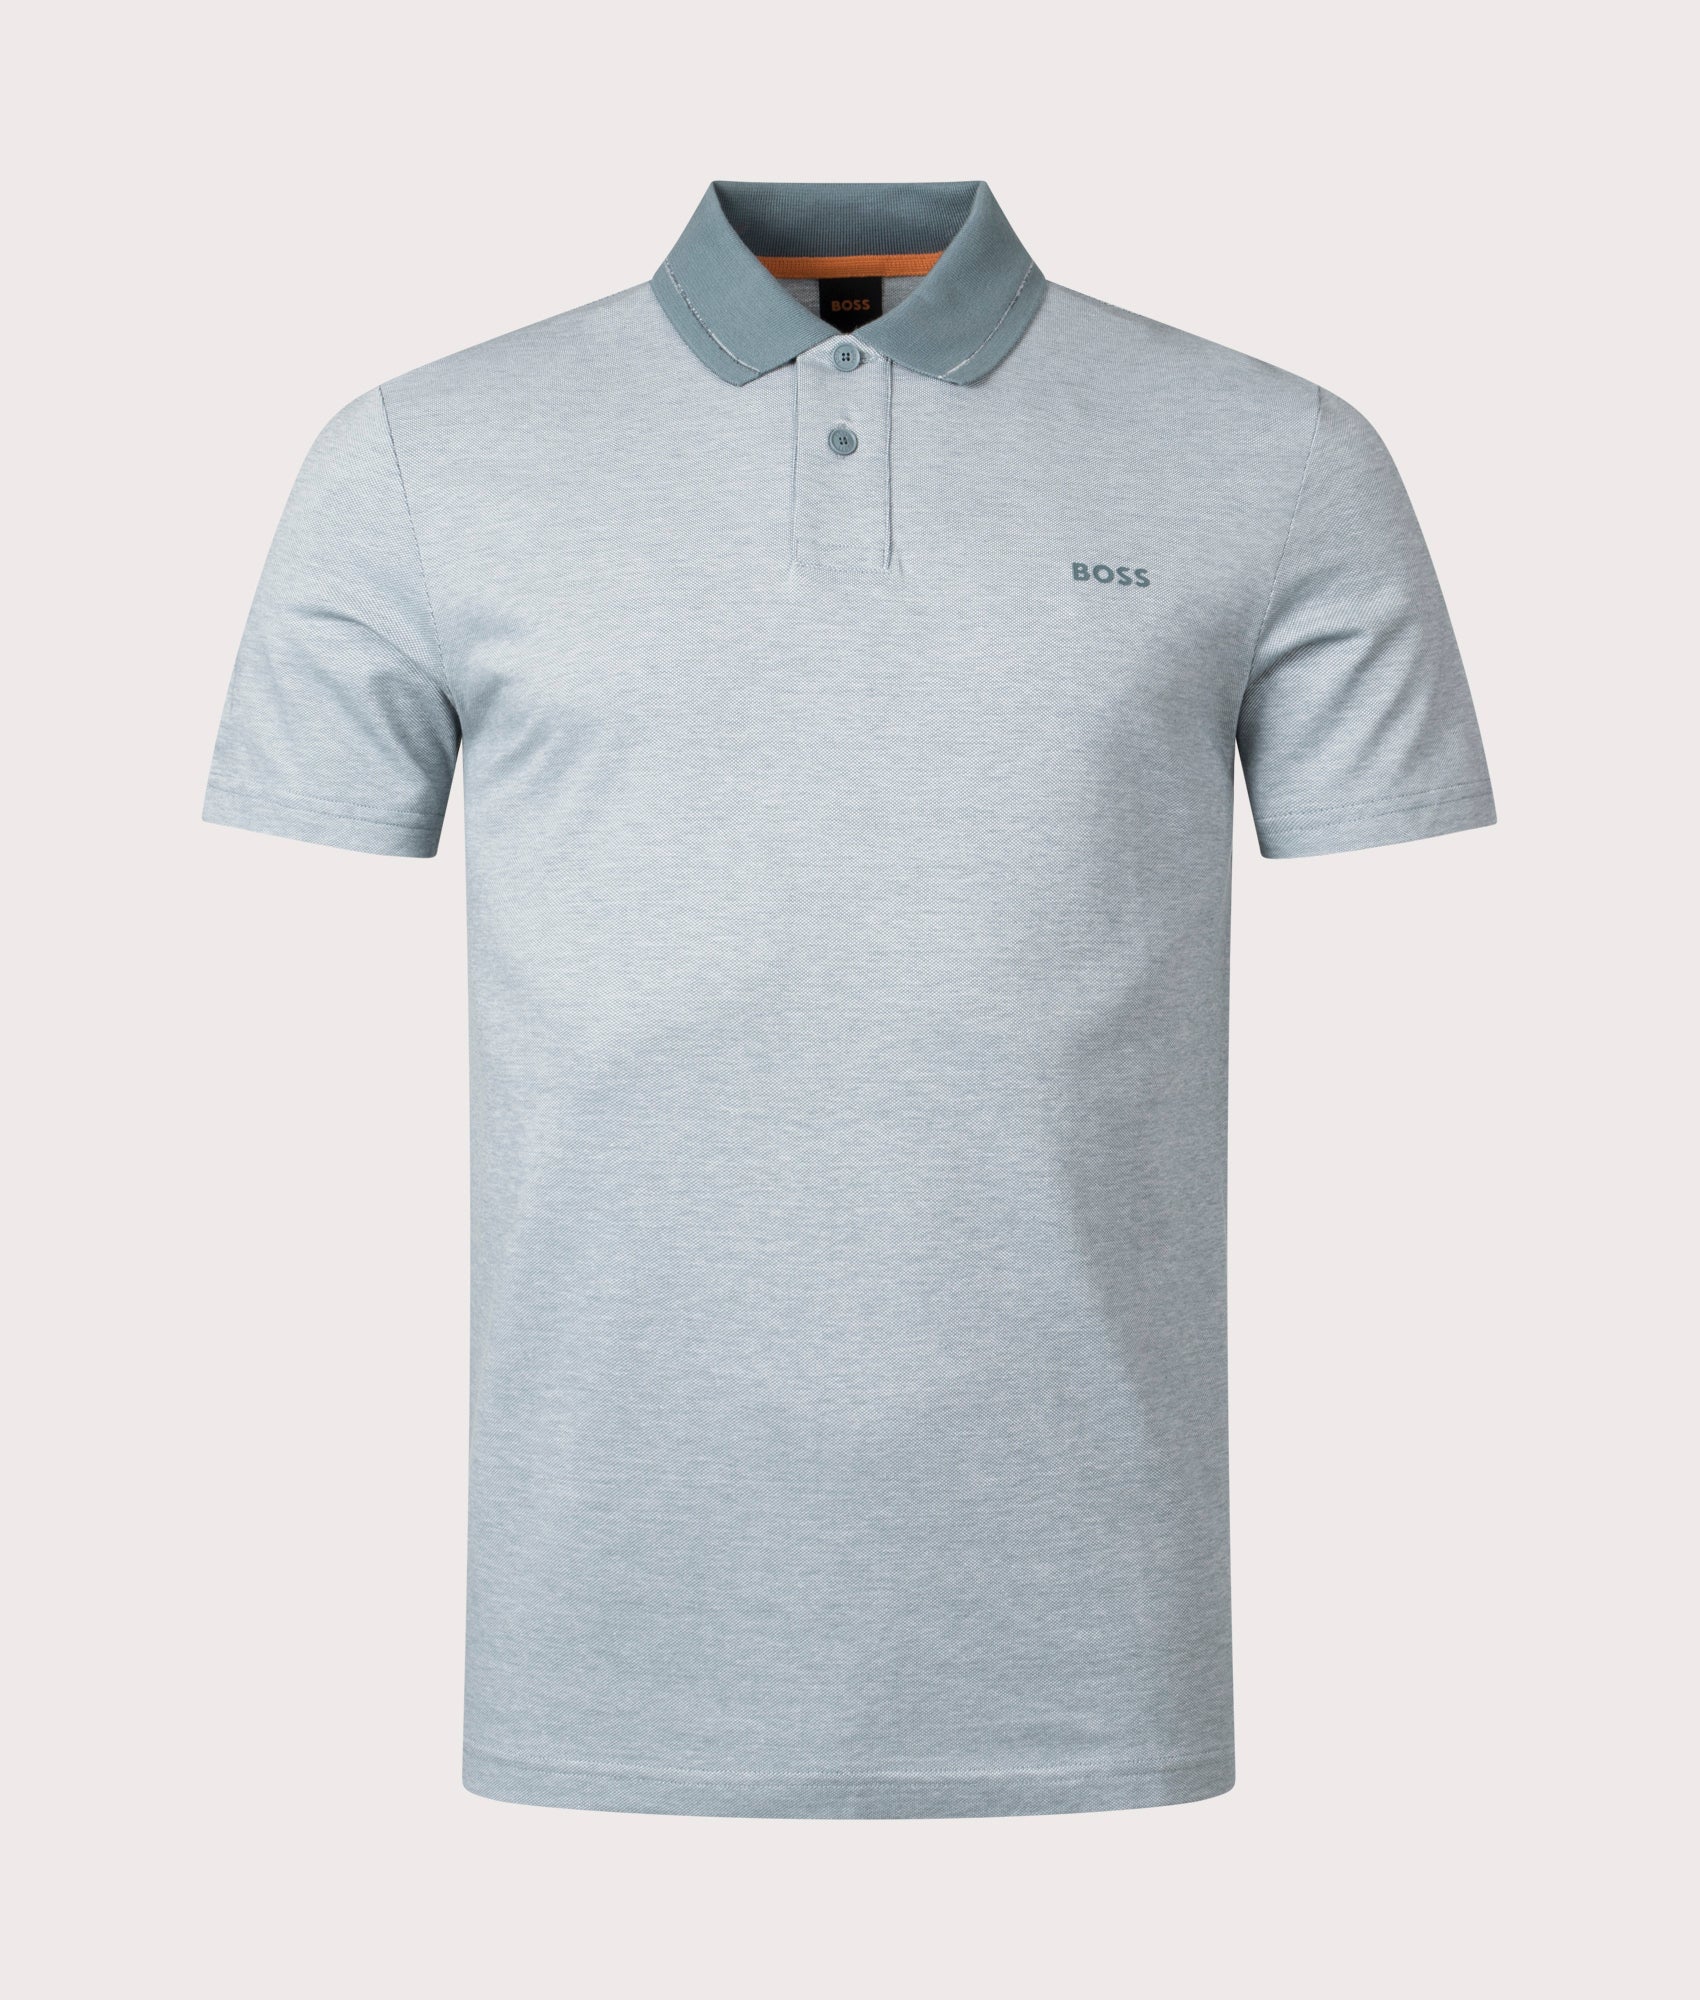 BOSS Mens Peoxford 1 Polo Shirt - Colour: 375 Open Green - Size: Medium